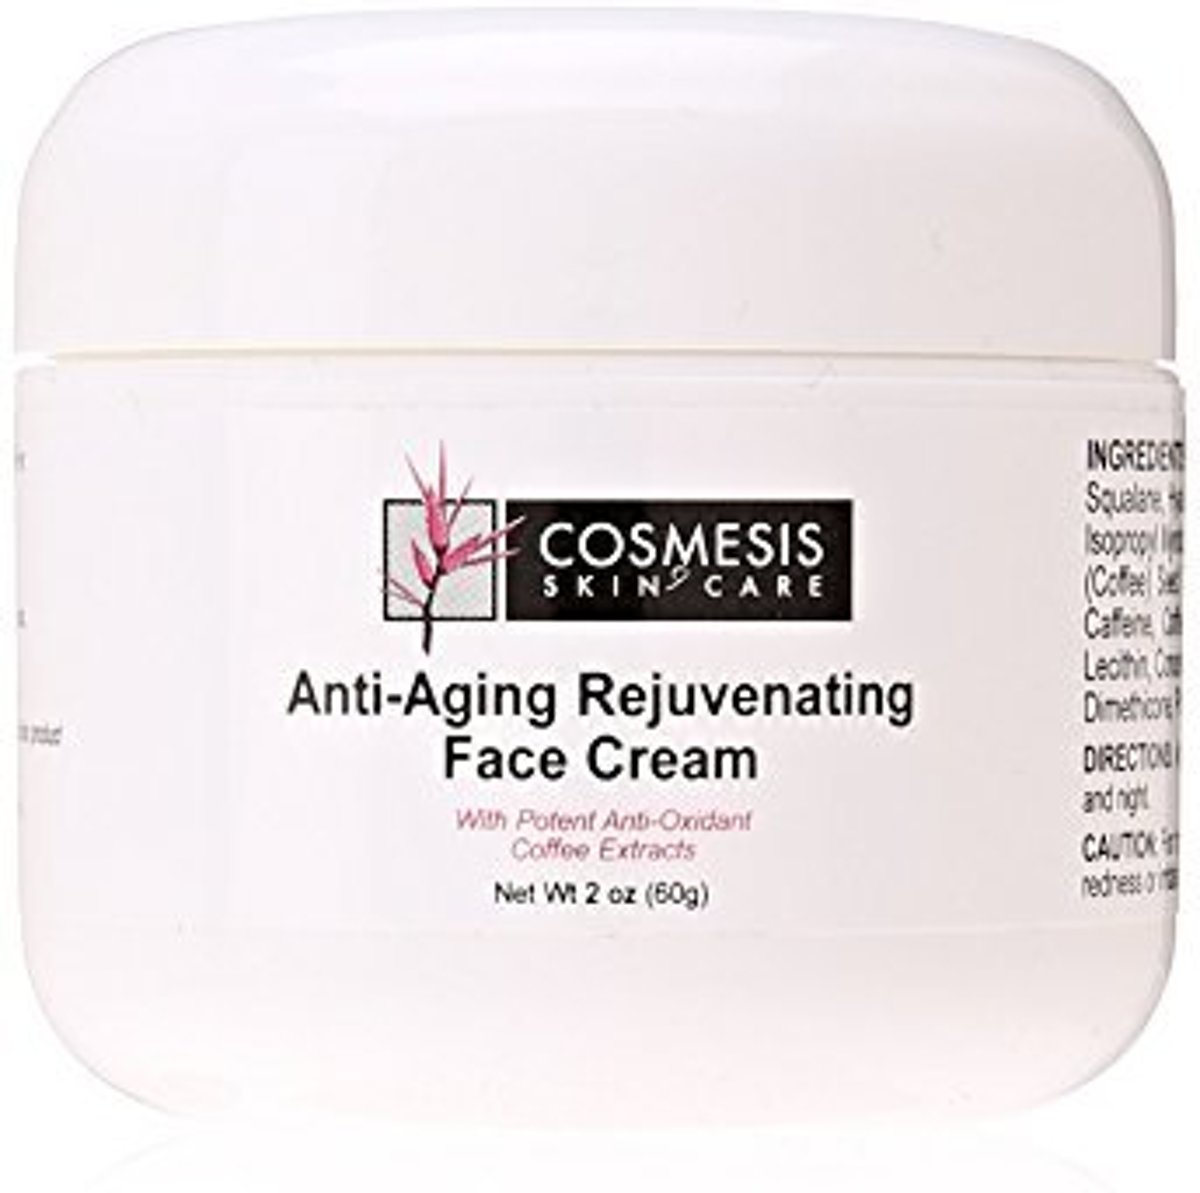 Foto van Anti-Aging Rejuvenating Face Cream, 2 Oz